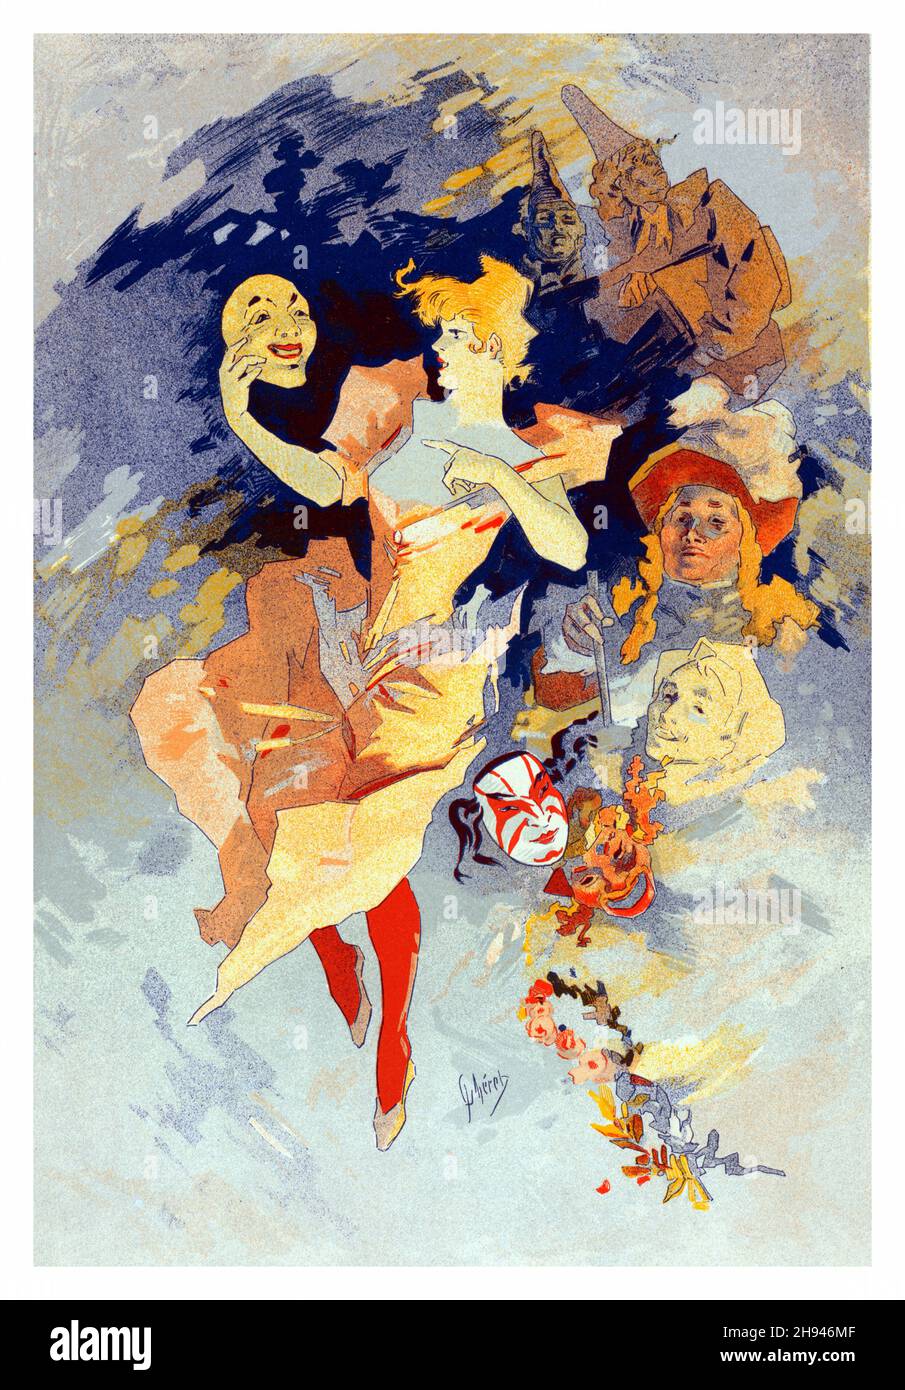 Les maîtres de l'affiche vol 5, piatto 205 - Poster art di Jules Chéret (1836-1932). Francese. Foto Stock